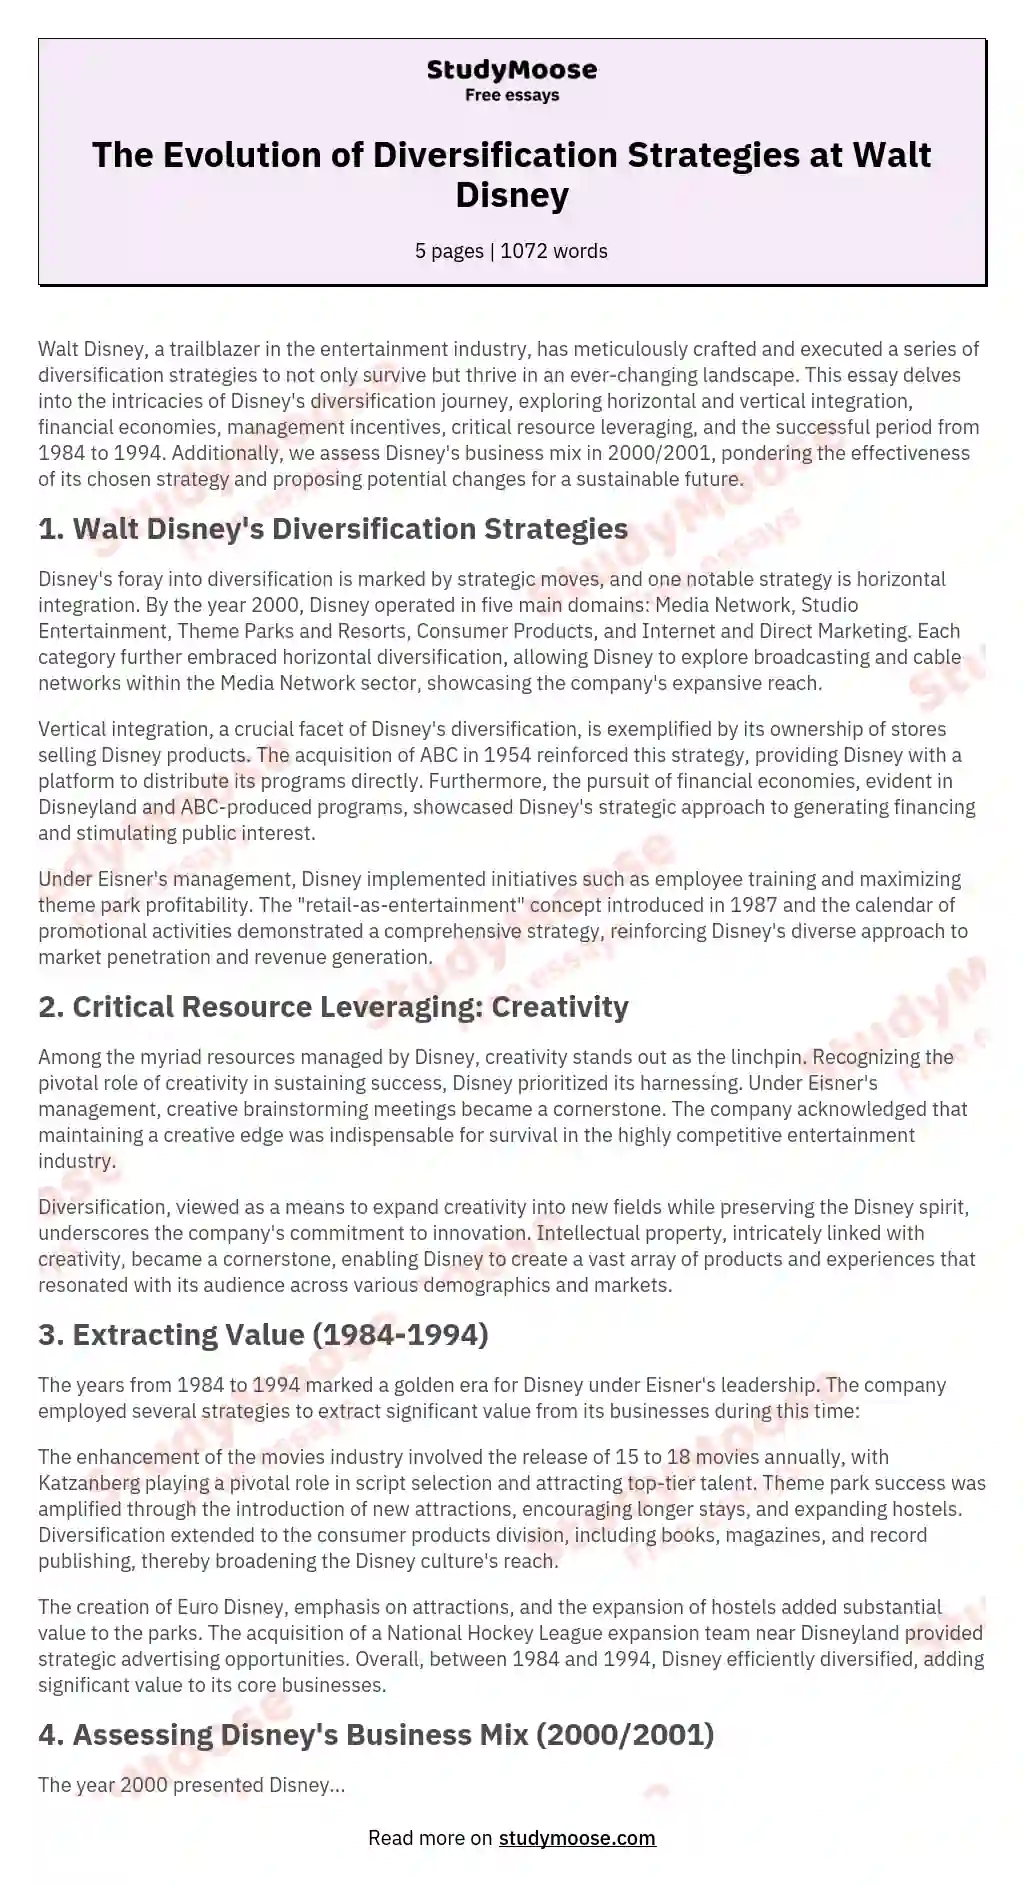 The Walt Disney Company: The Entertainment King Company's History Analysis